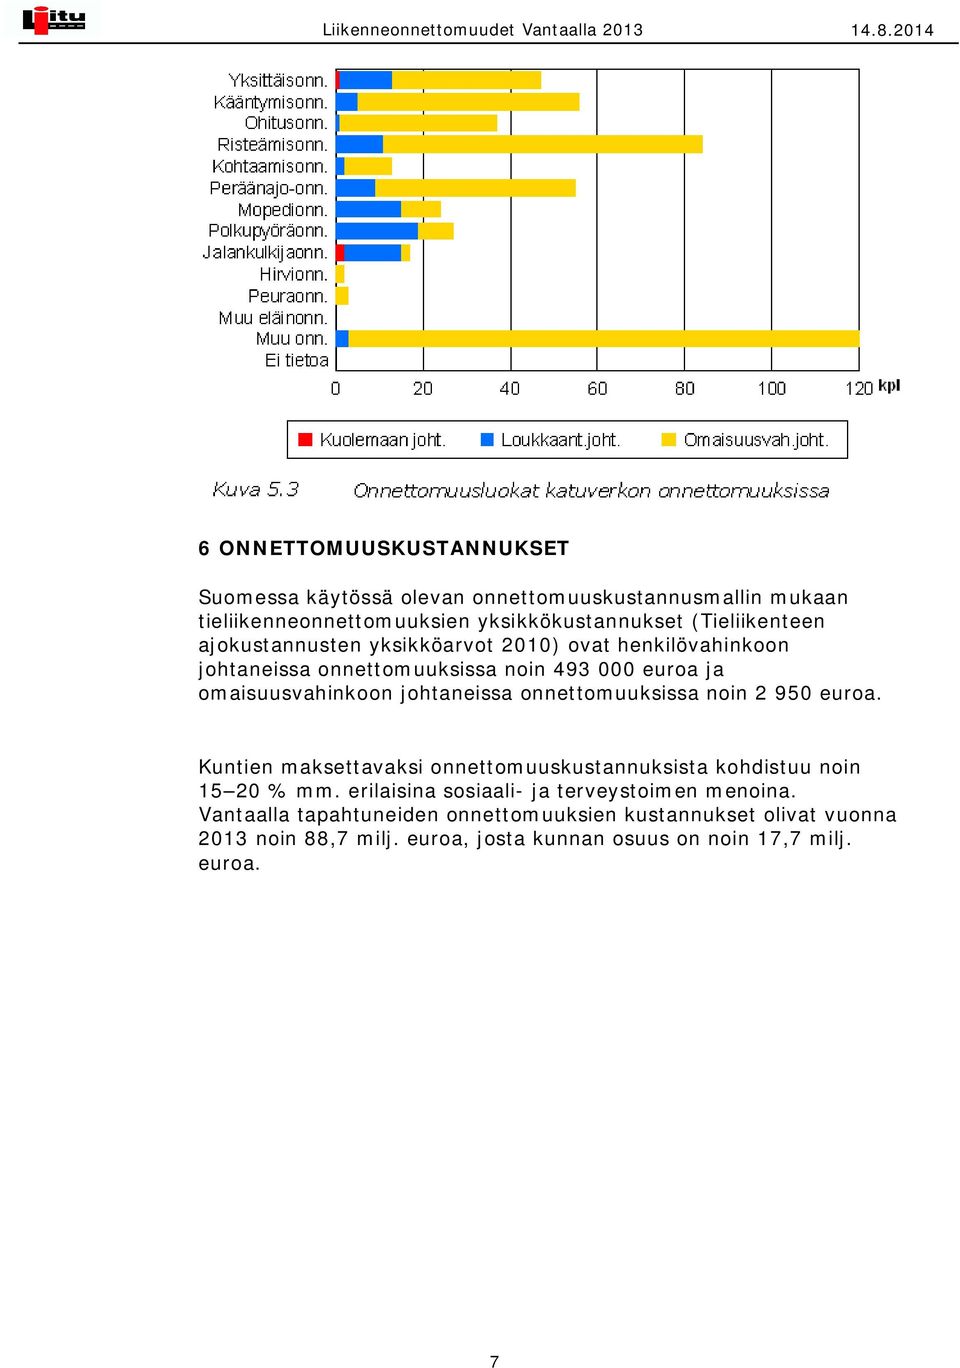 ajokustannusten yksikköarvot 2010) ovat henkilövahinkoon johtaneissa onnettomuuksissa noin 493 000 euroa ja omaisuusvahinkoon johtaneissa onnettomuuksissa